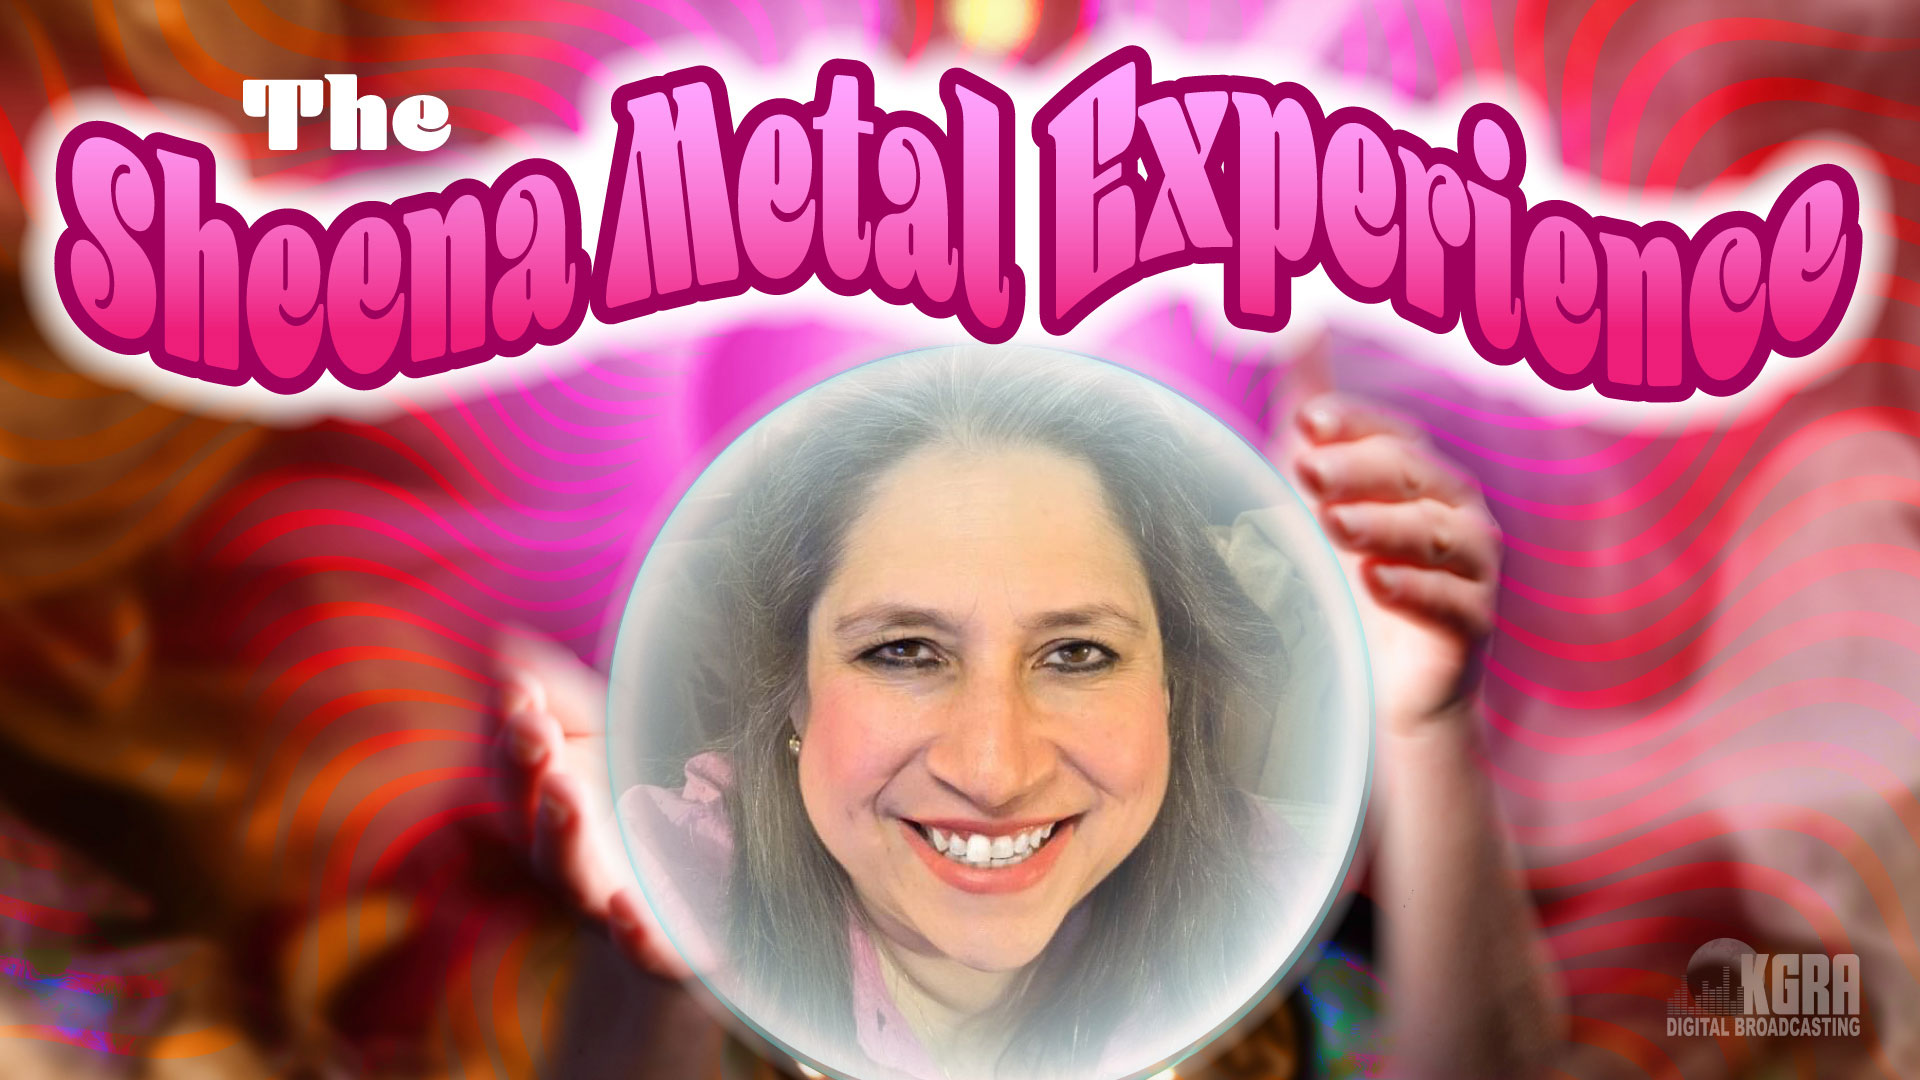 Sheena Metal Experience